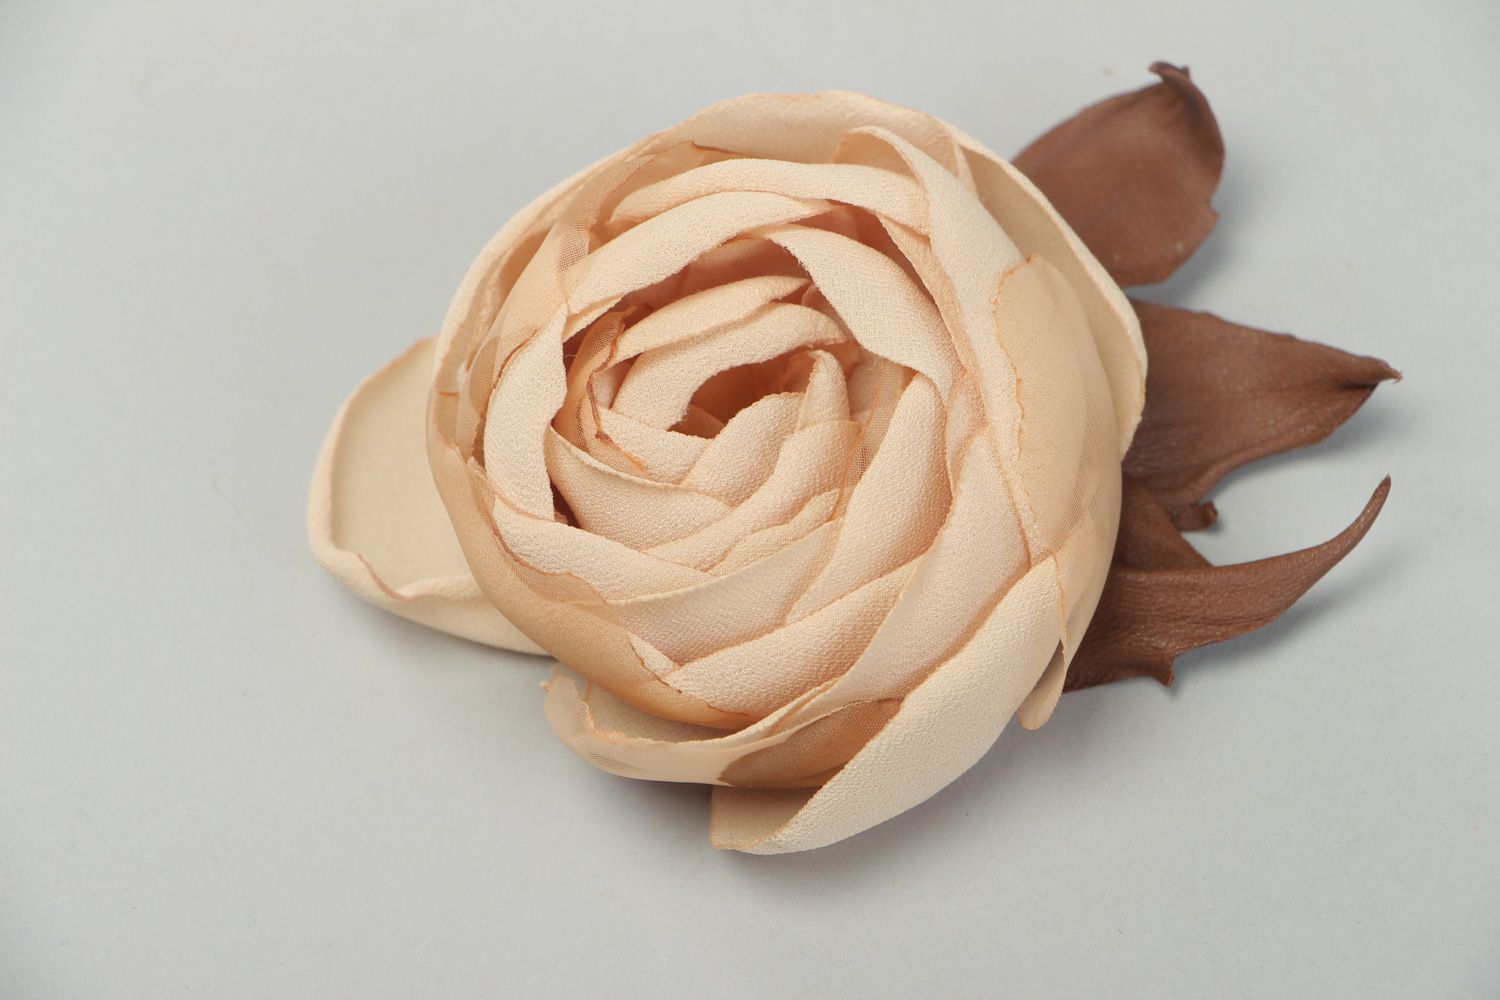 Красивая брошь из натуральной кожи и шифона в виде розы крупная бежевая фото 1